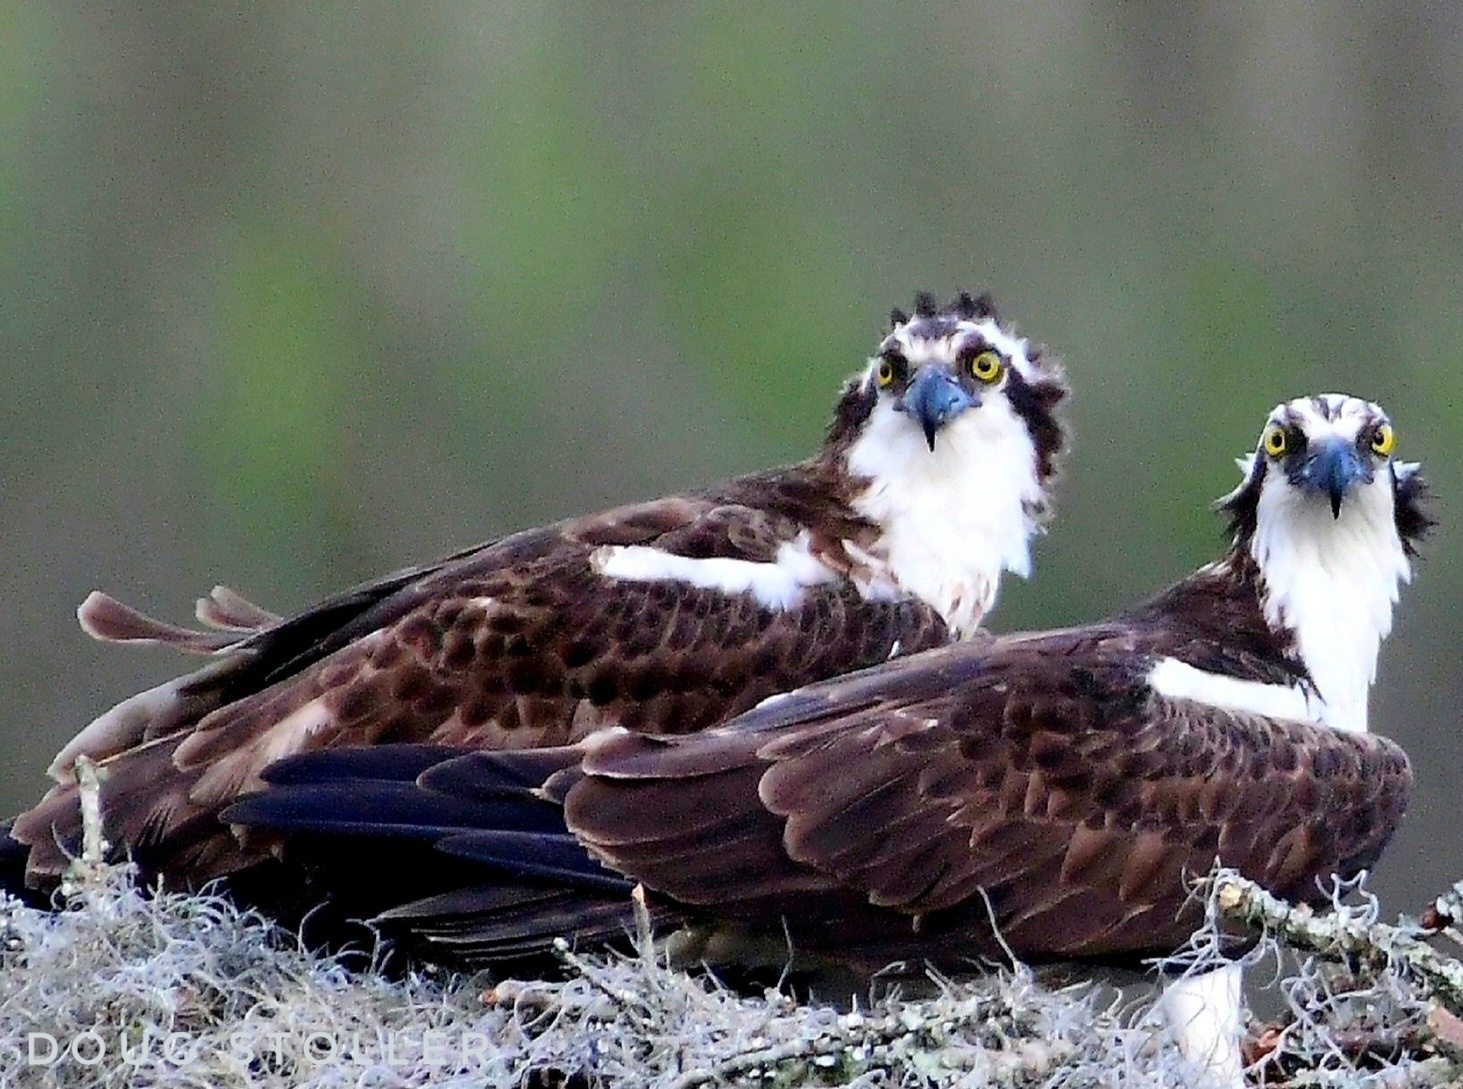 Image of two nesting Osprey